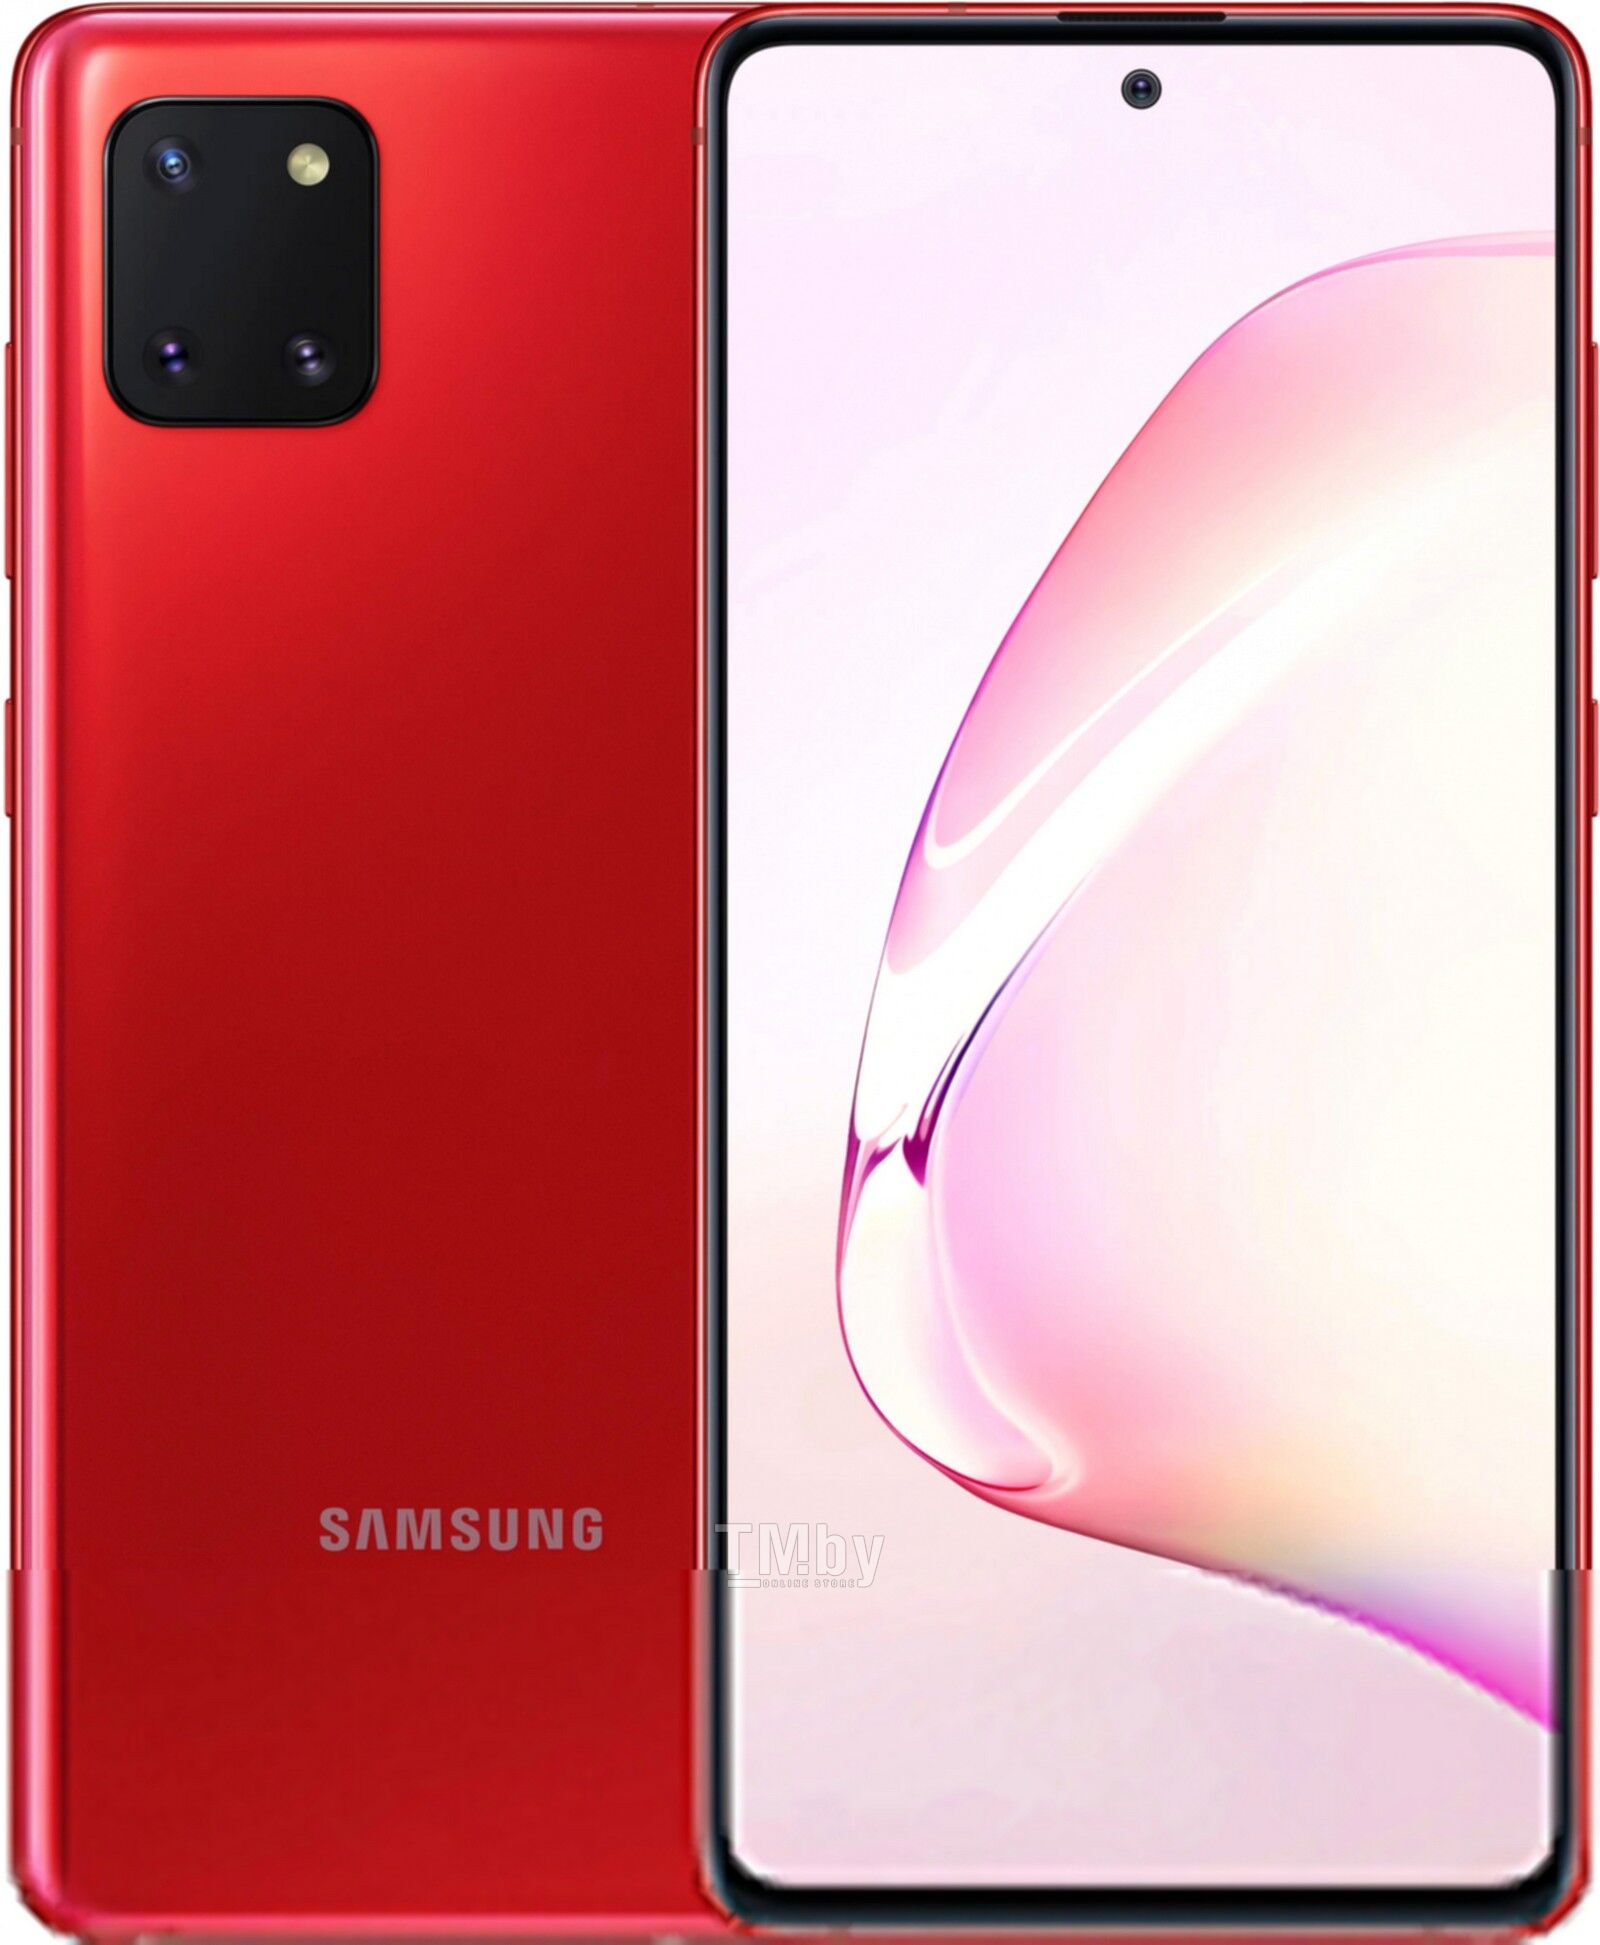 Самсунг галакси нот лайт. Samsung Galaxy Note 10 Lite. Samsung Galaxy Note 10 Lite 6/128gb. Смартфон Samsung Galaxy Note 10 Lite красный. Samsung Galaxy Note 10 256гб.